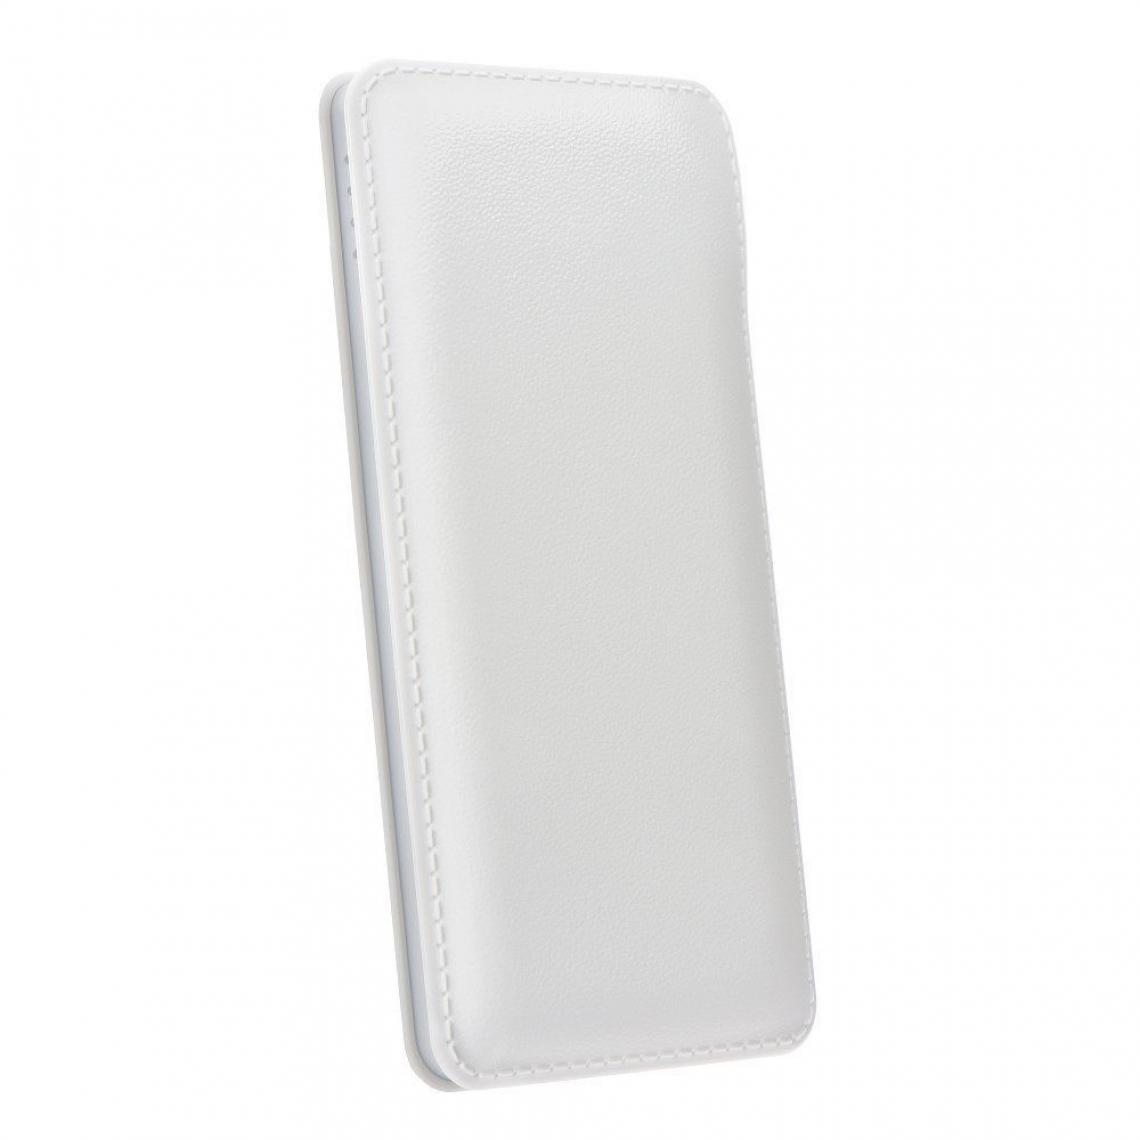 Ozzzo - Chargeur batterie externe 30000 mAh powerbank ozzzo blanc pour Samsung Galaxy A10s - Autres accessoires smartphone